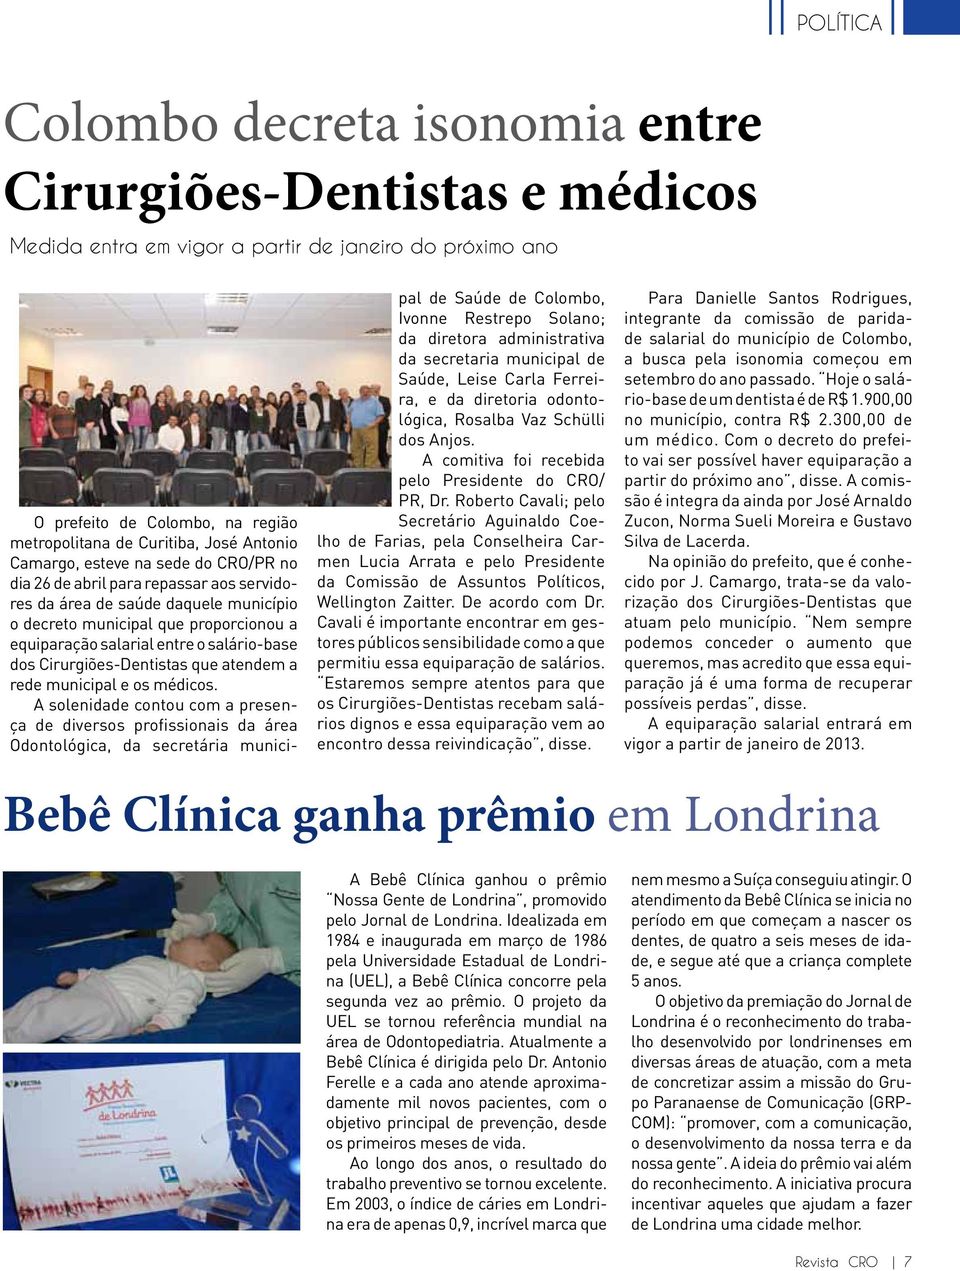 salário-base dos Cirurgiões-Dentistas que atendem a rede municipal e os médicos.